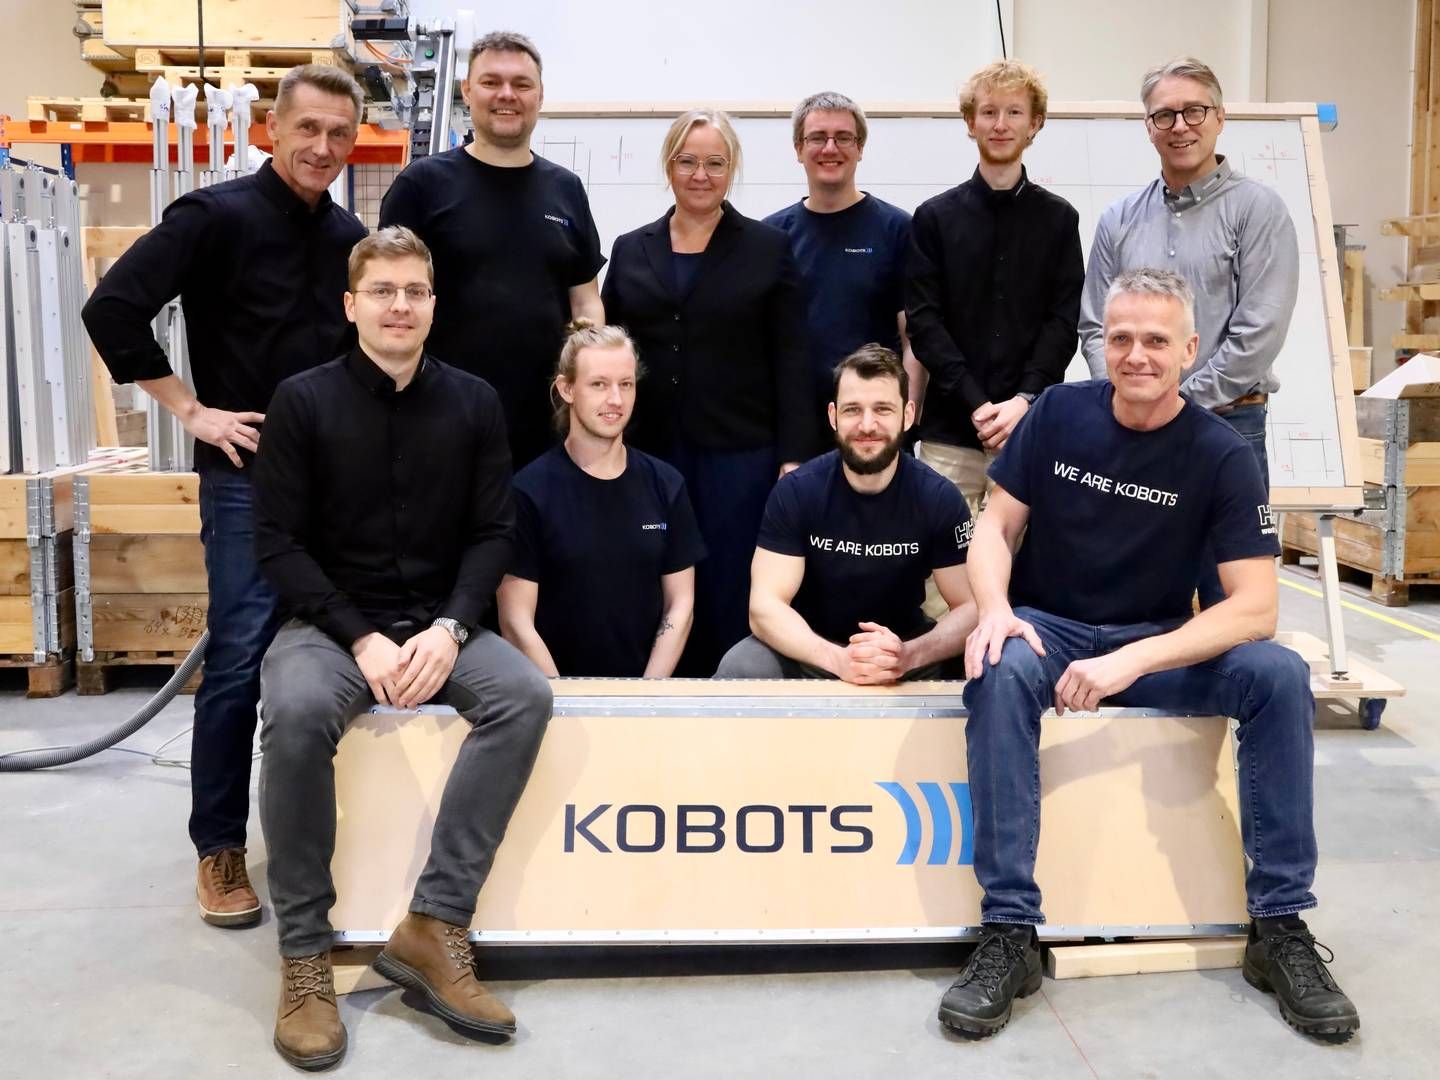 Seks ud af Kobots 10 nuværende medarbejdere samlet sammen med et hav af robotter, som var på vej til USA. | Foto: Kobots / Pr